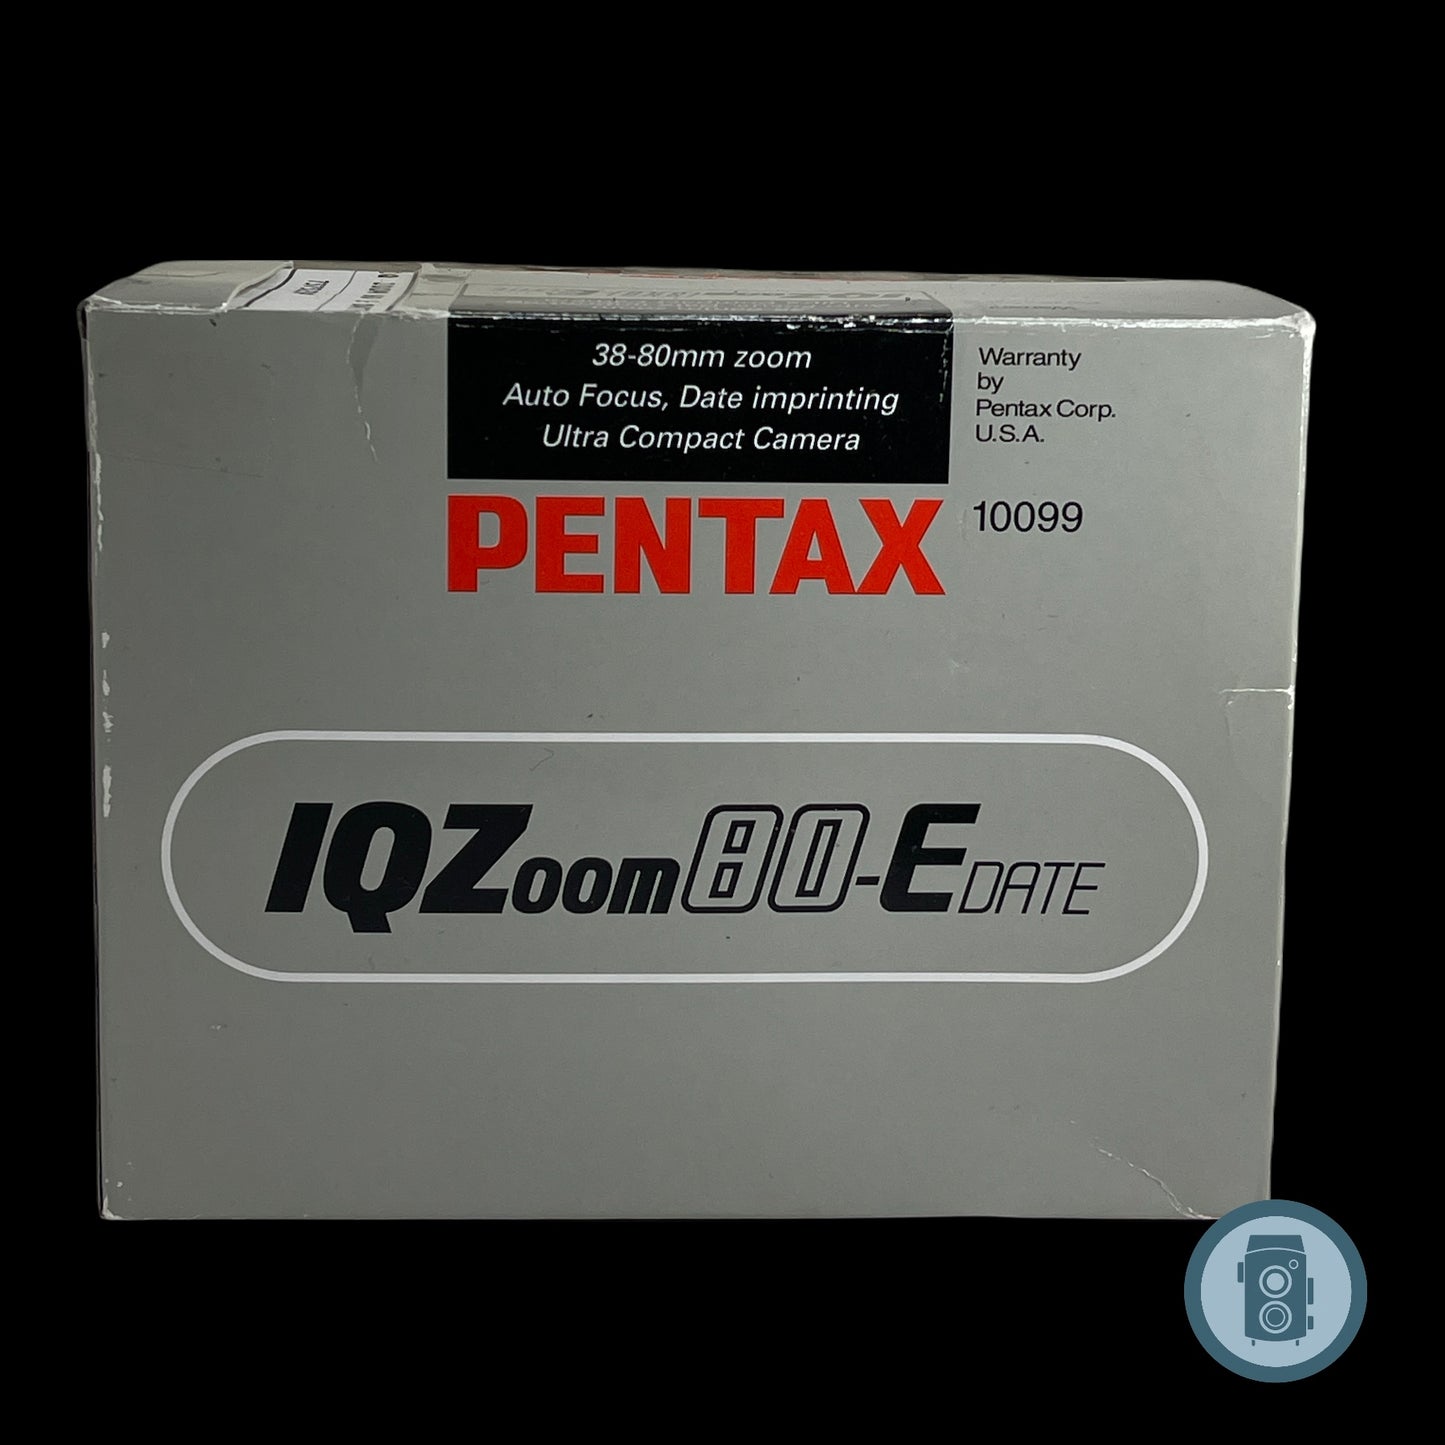 Pentax IQZoom 80 E-Date (AV) New S#7375239